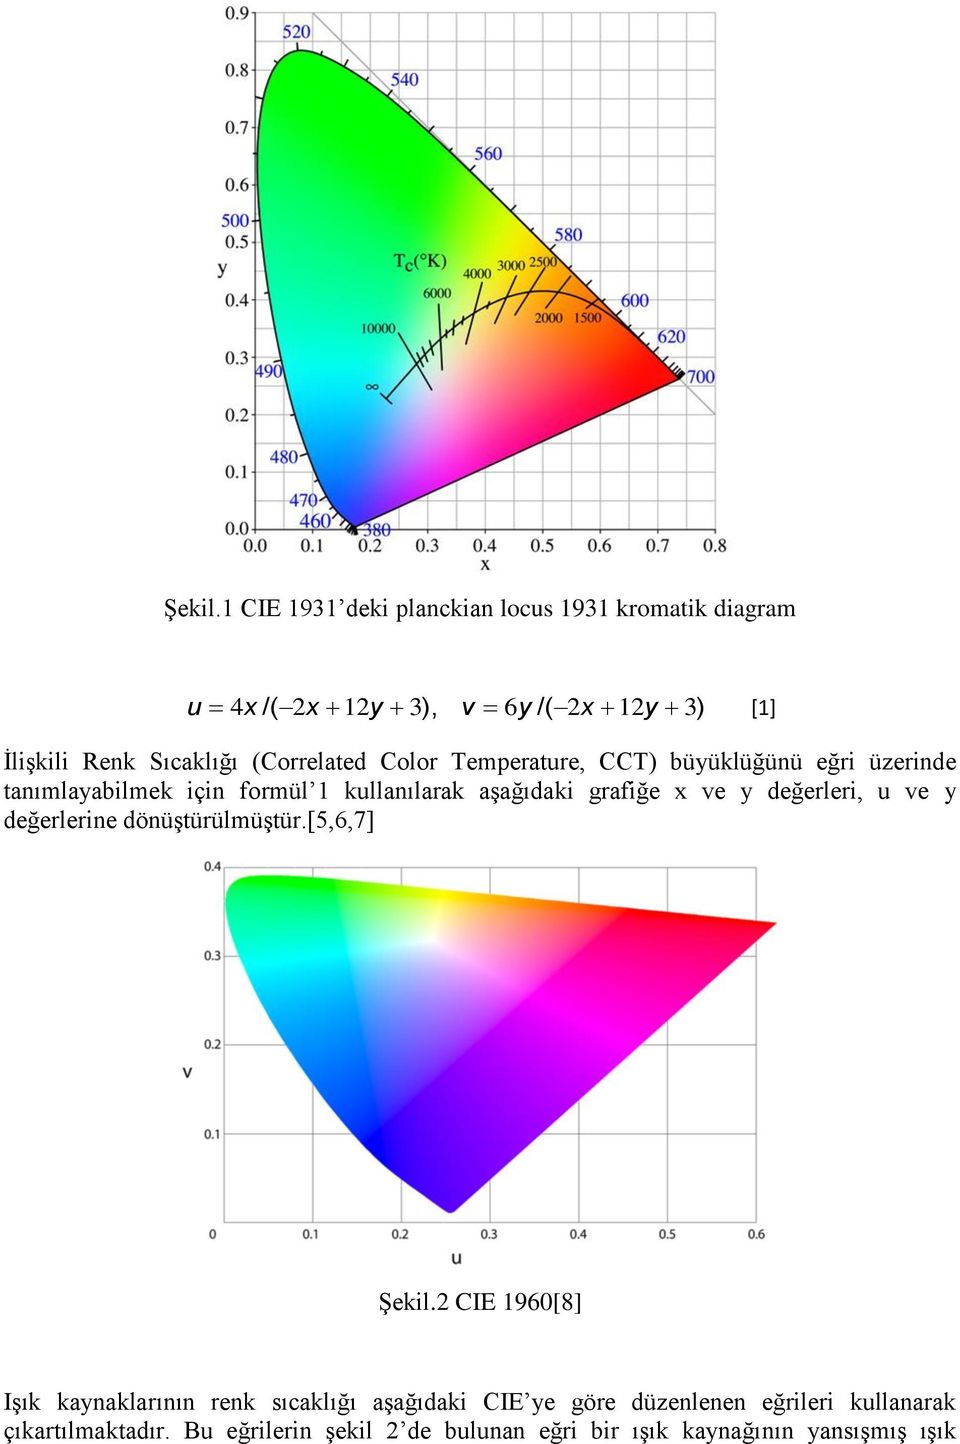 (Correlated Color Temperature, CCT) büyüklüğünü eğri üzerinde tanımlayabilmek için formül 1 kullanılarak aşağıdaki grafiğe x